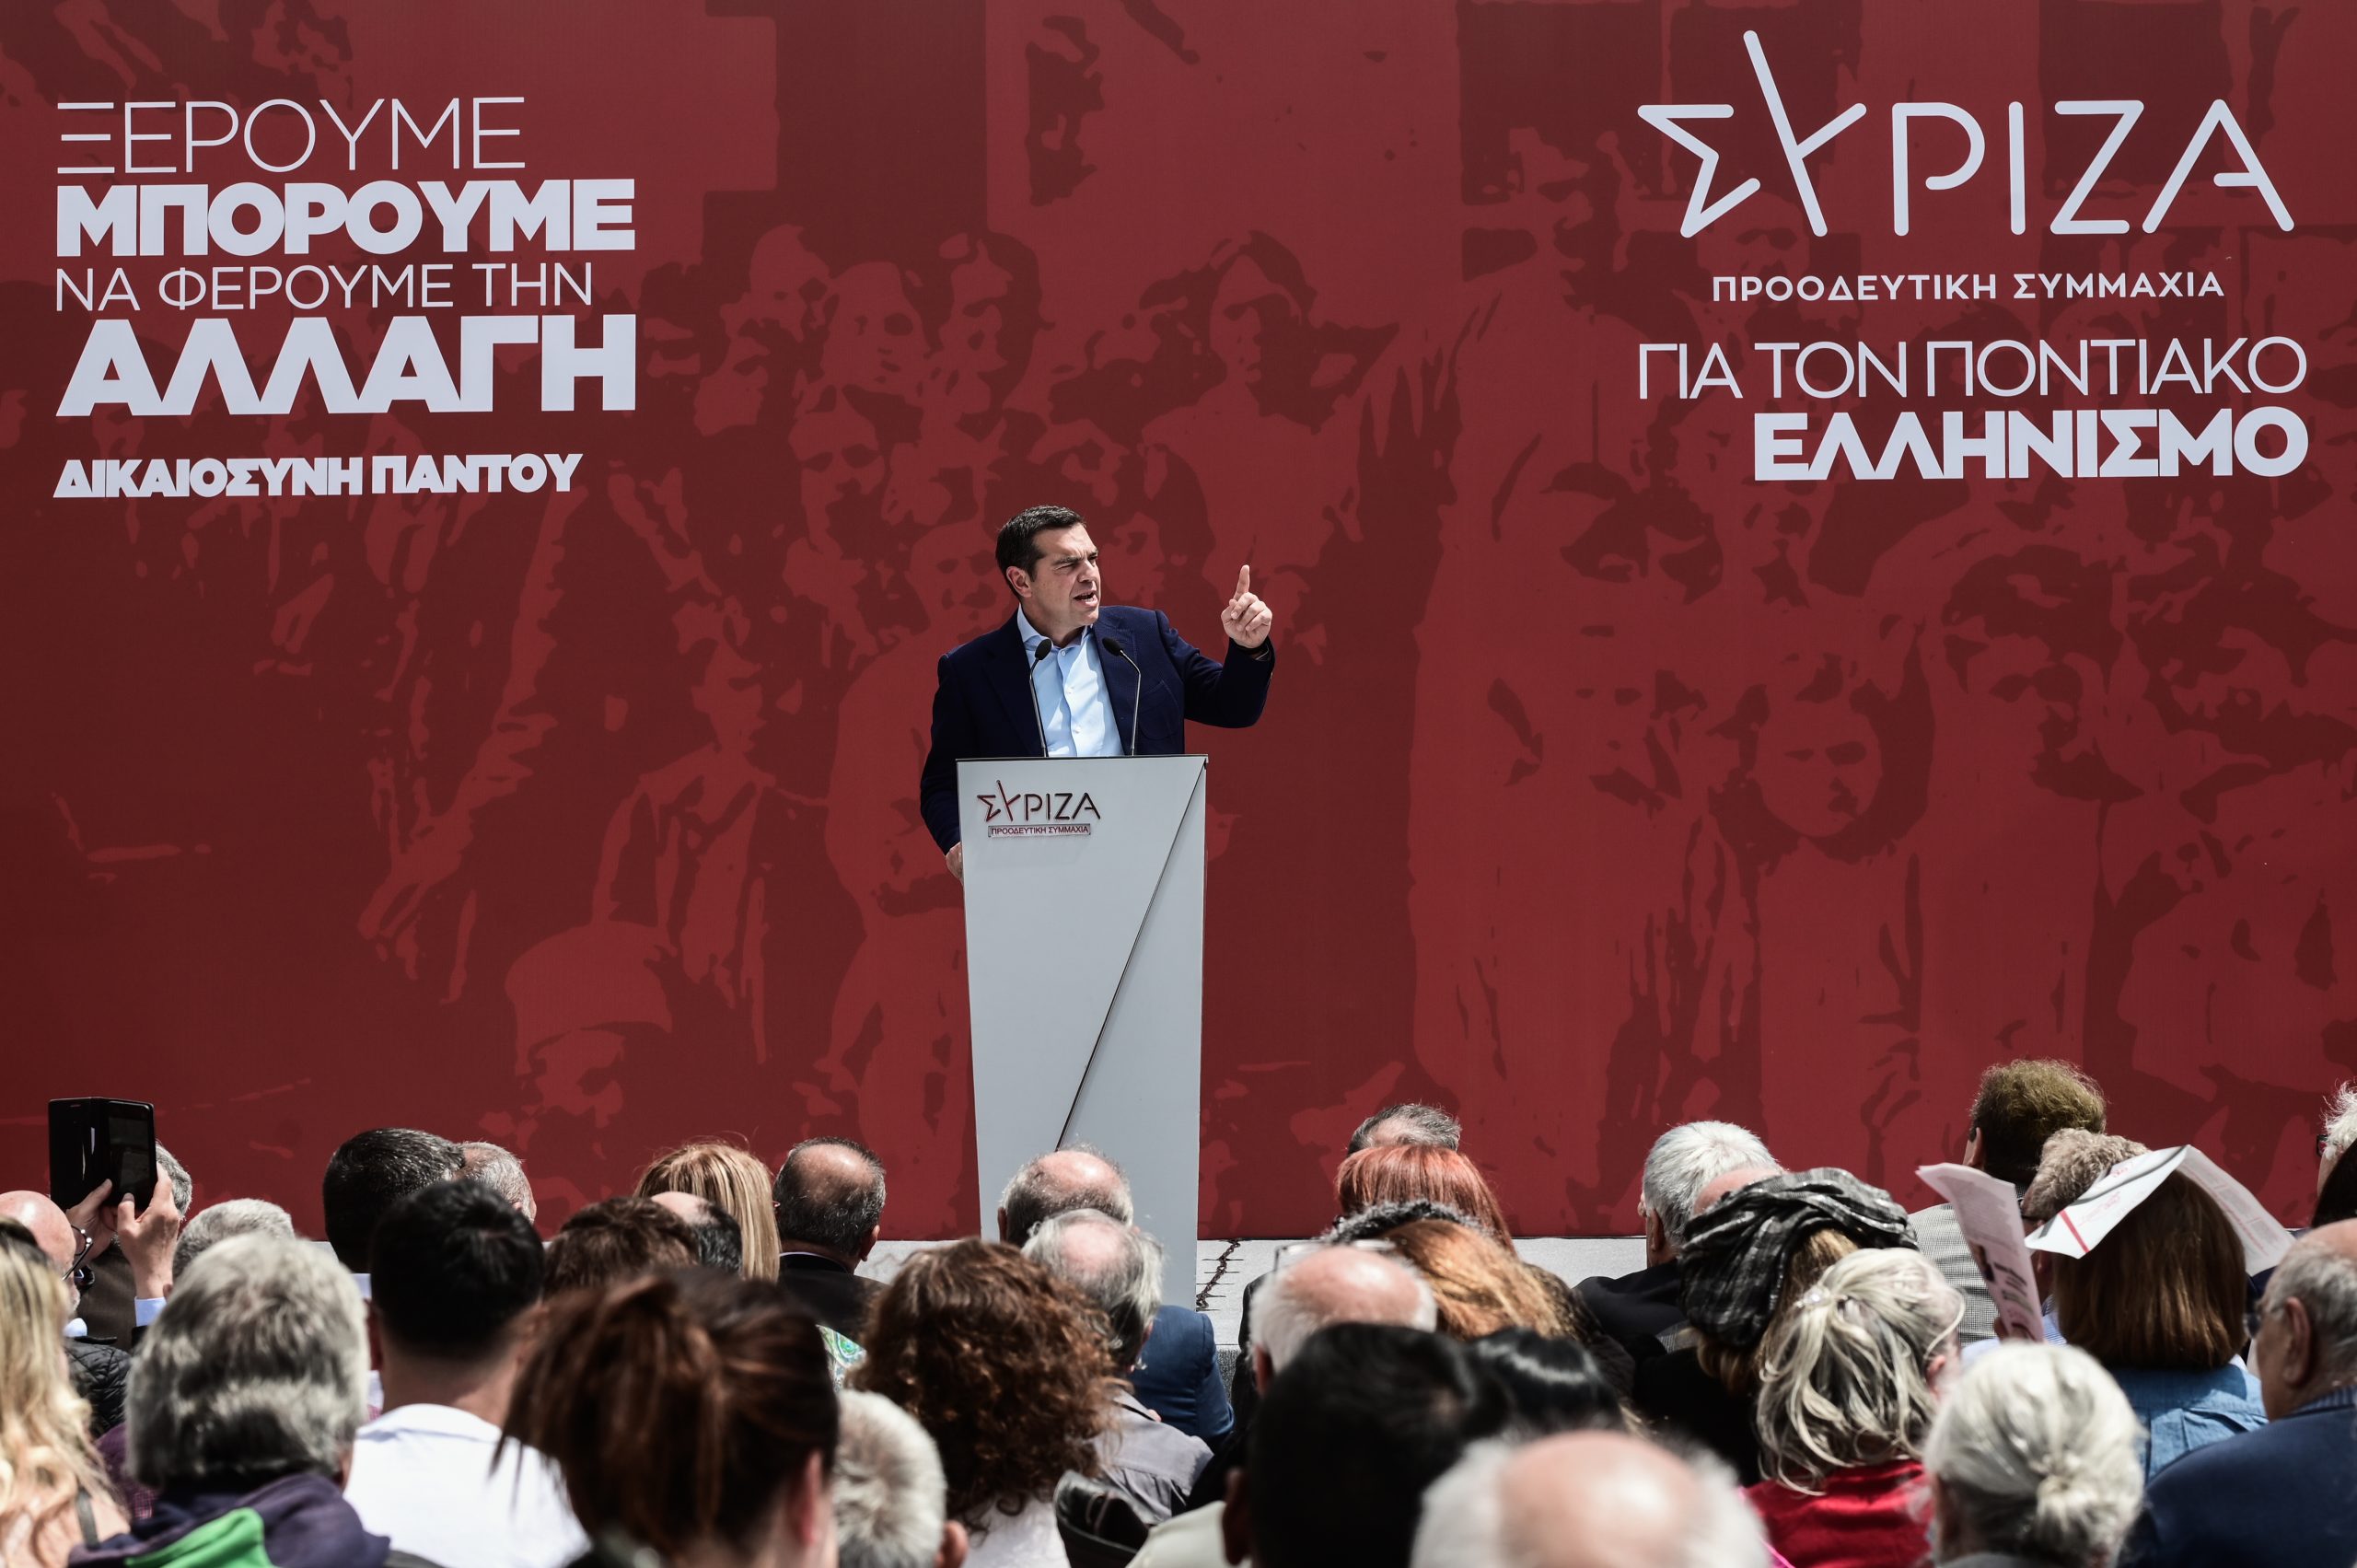 Οι δεσμεύσεις του Αλέξη Τσίπρα για τη στήριξη του Ποντιακού Ελληνισμού